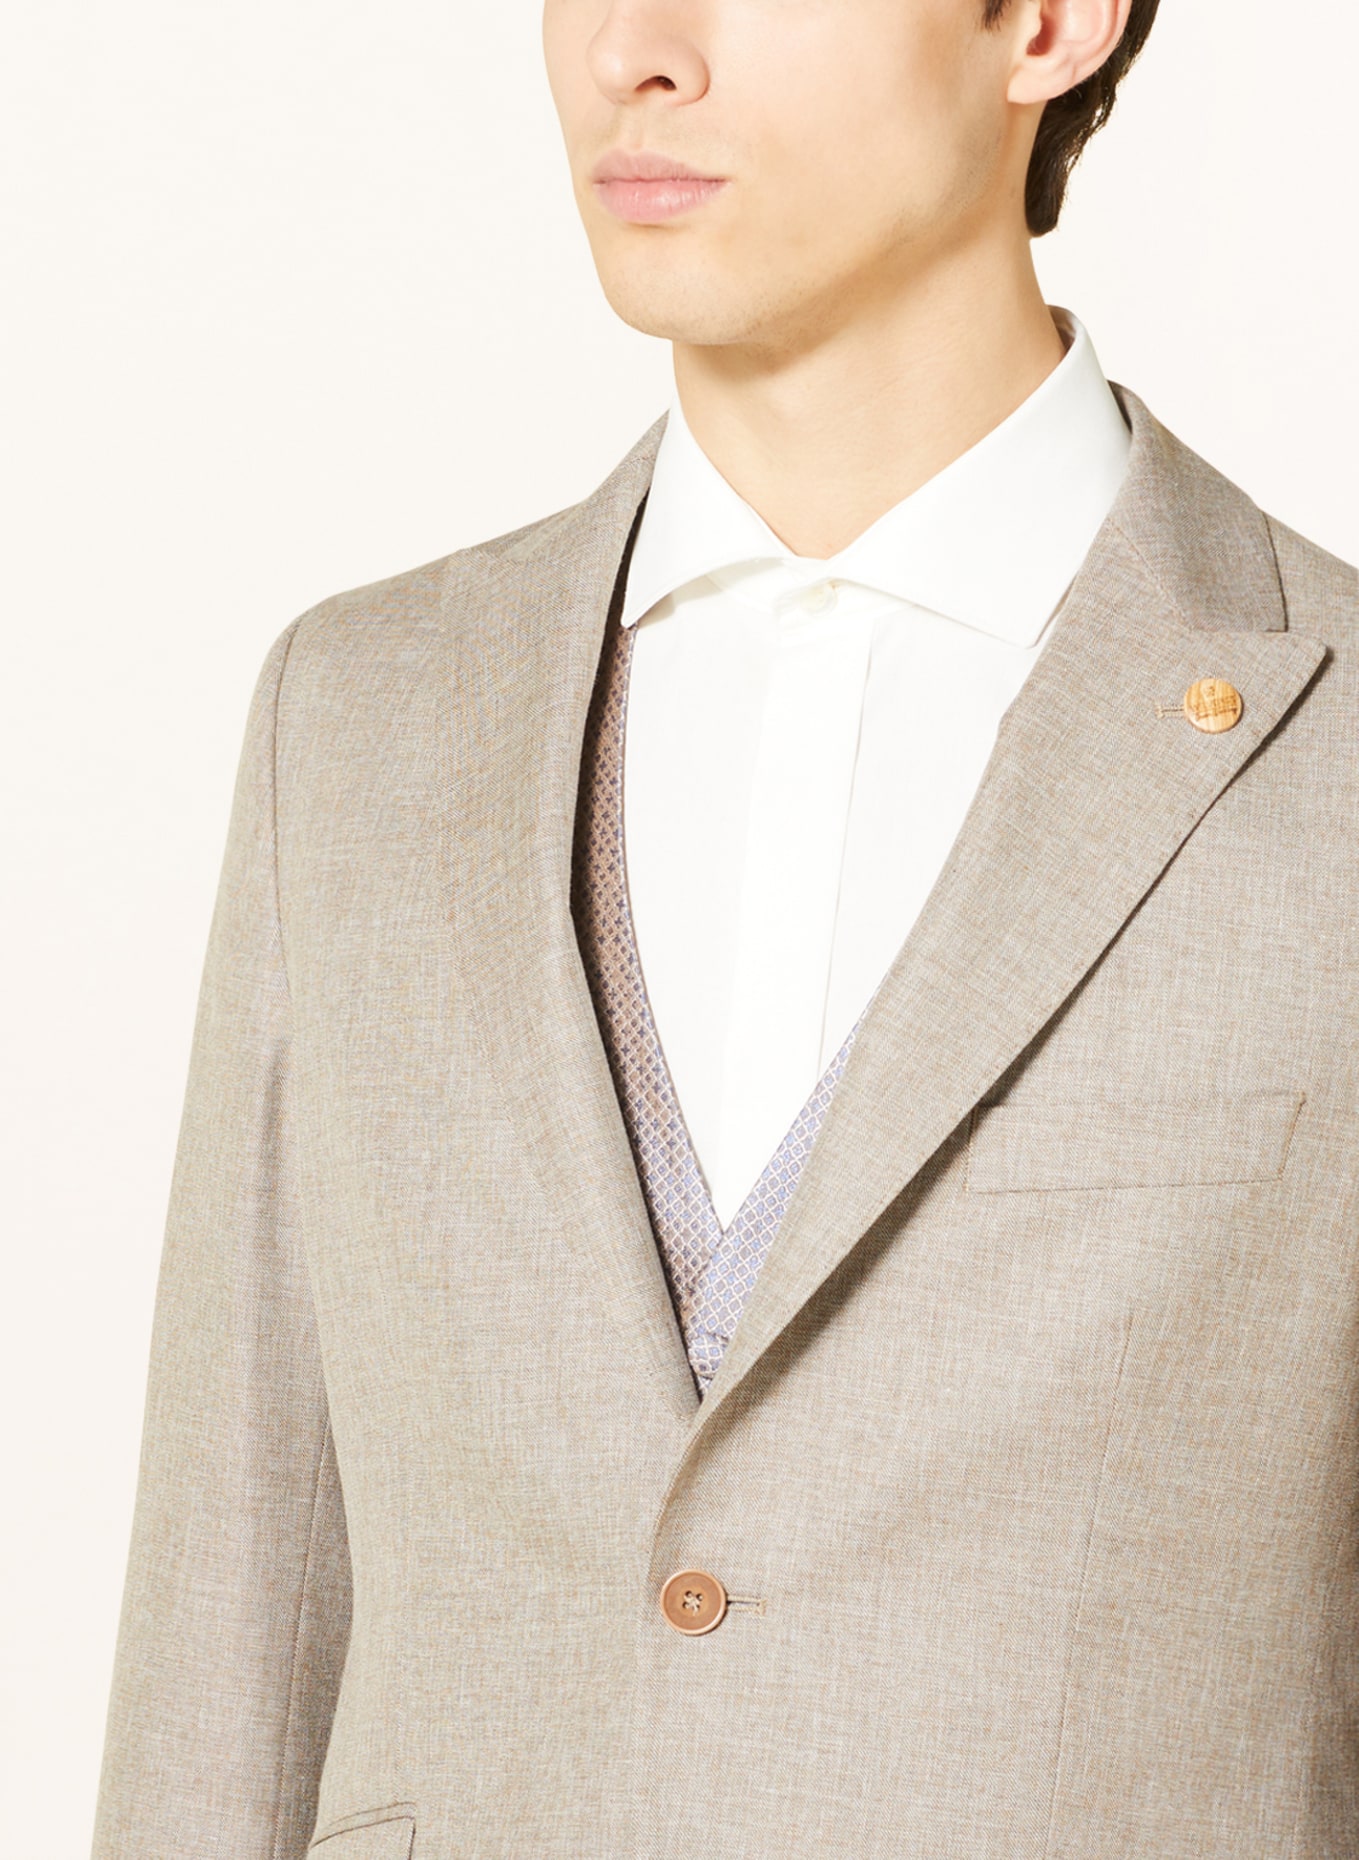 WILVORST Suit jacket extra slim fit, Color: BEIGE (Image 6)